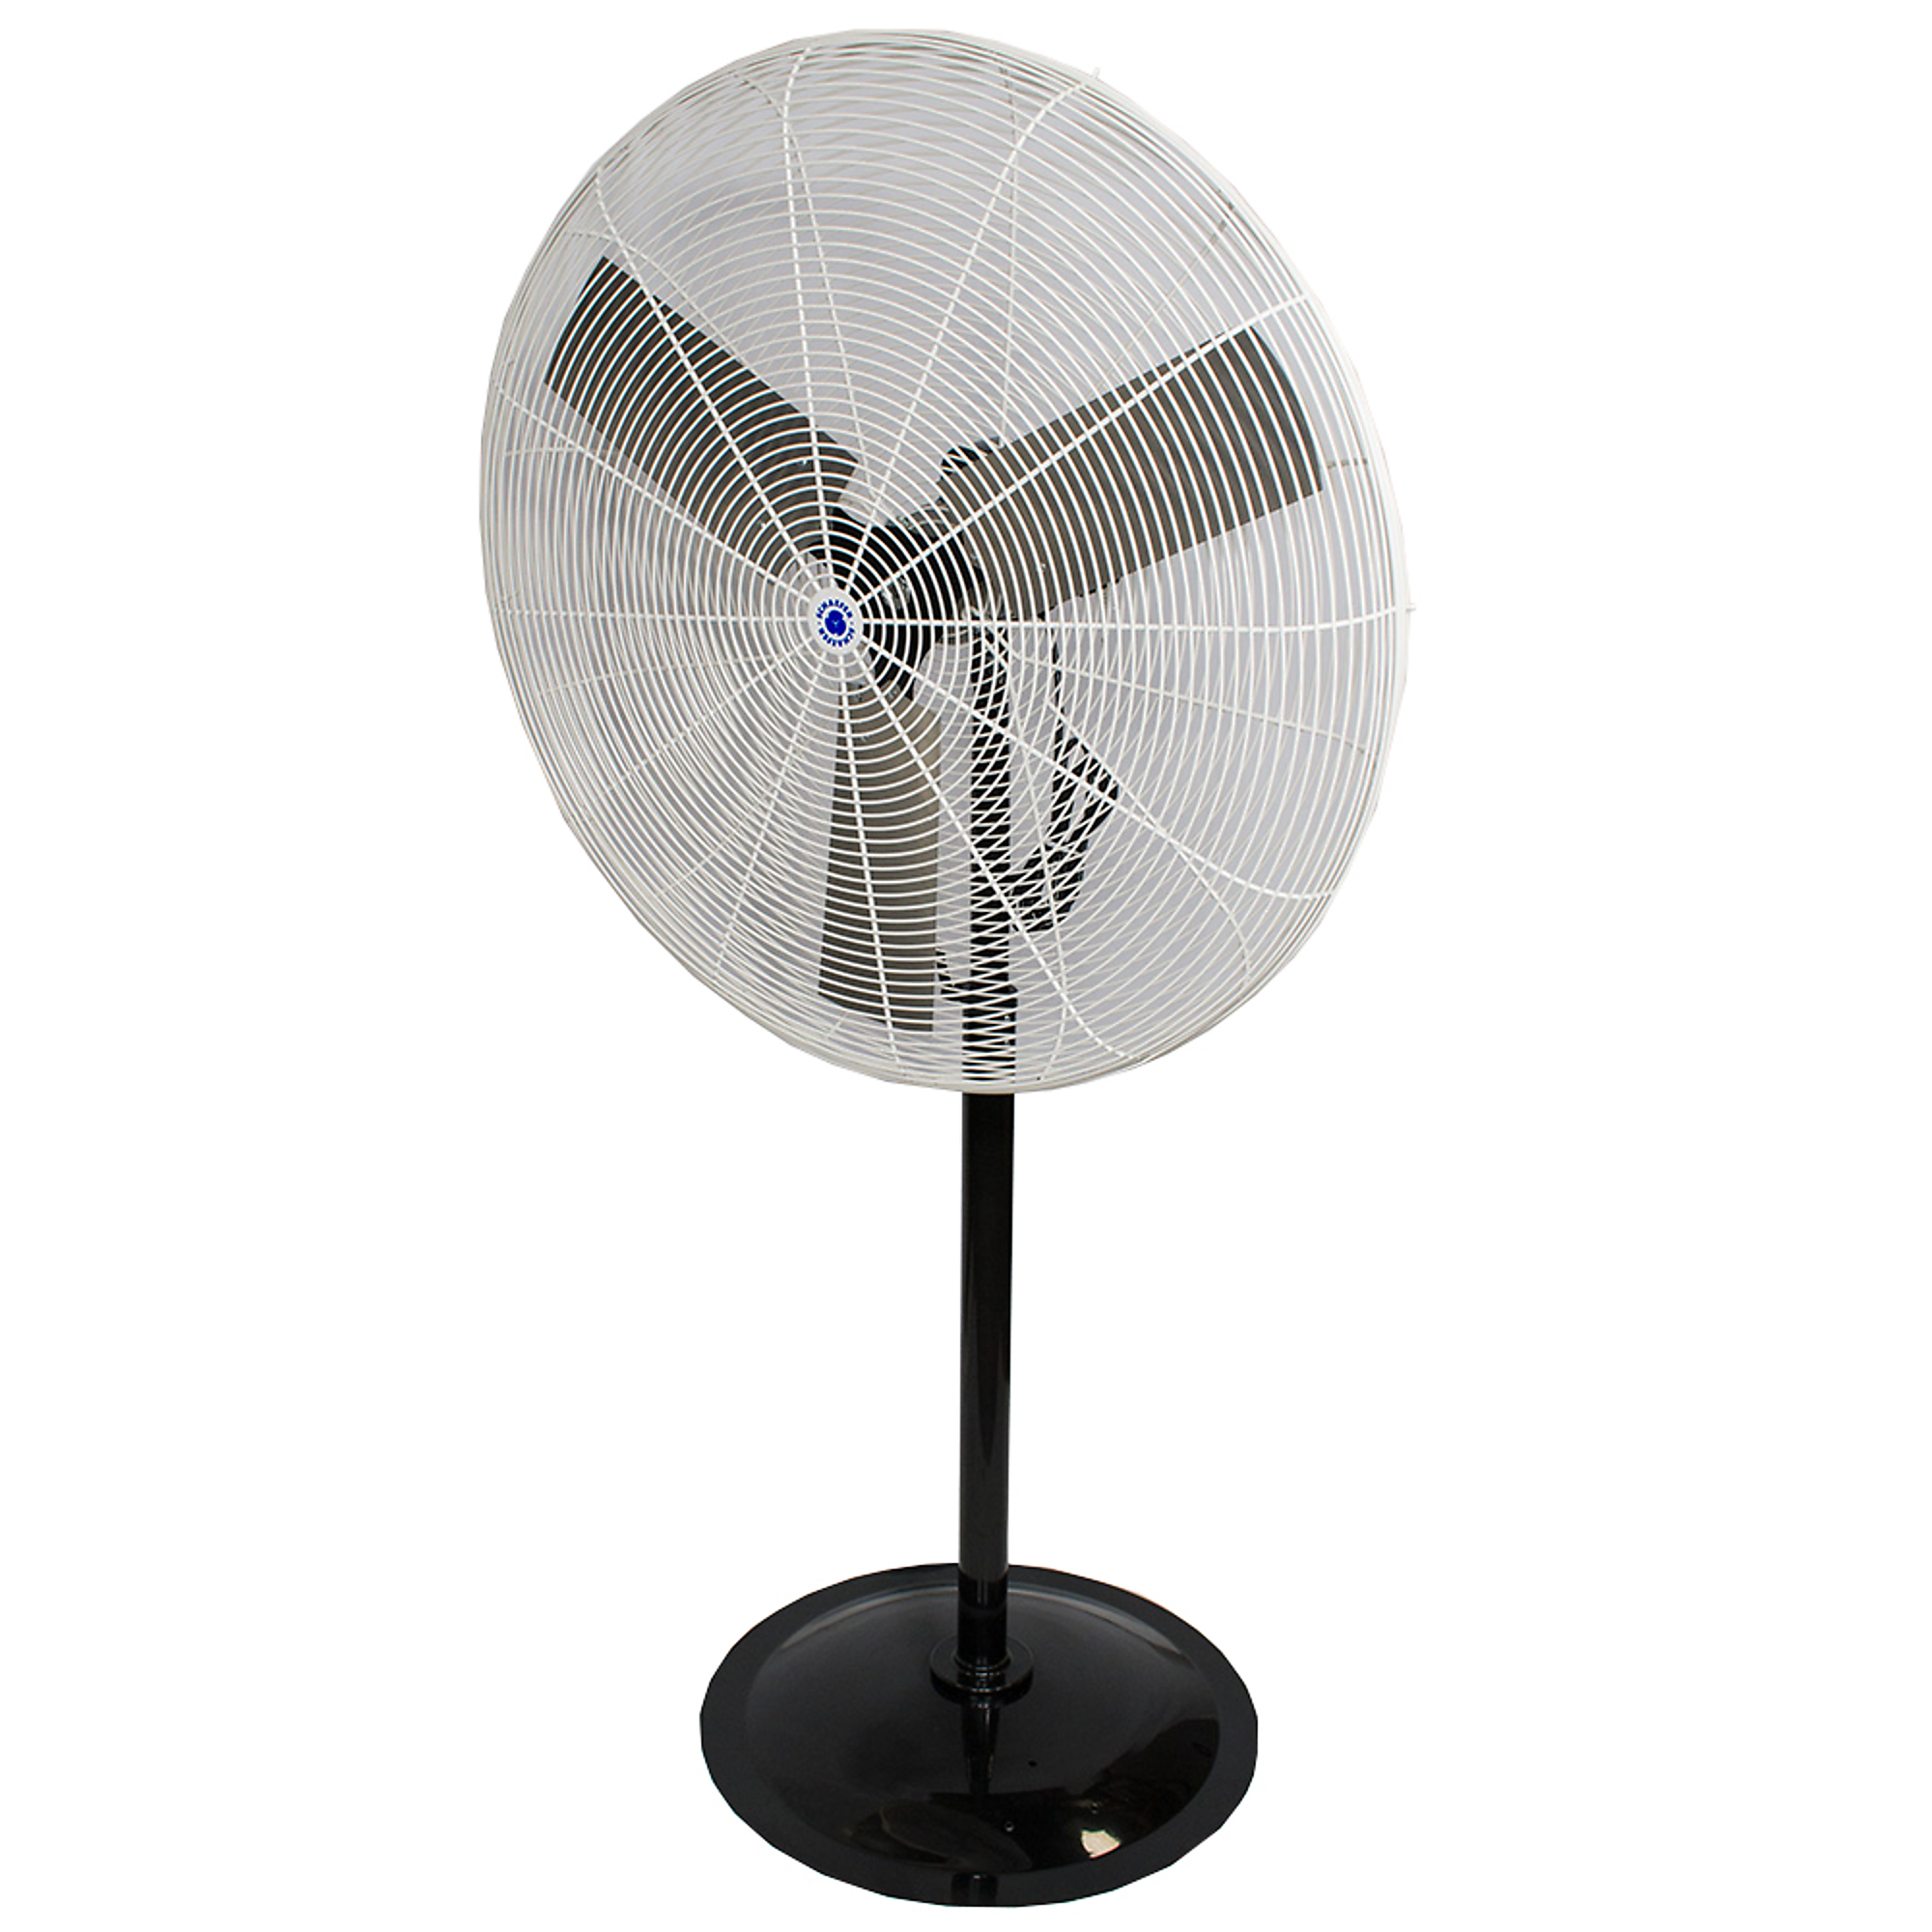 Schaefer, Pedestal Fan OSHA, Fan Diameter 36 in, Air Delivery 12120 cfm, Model 36PFR